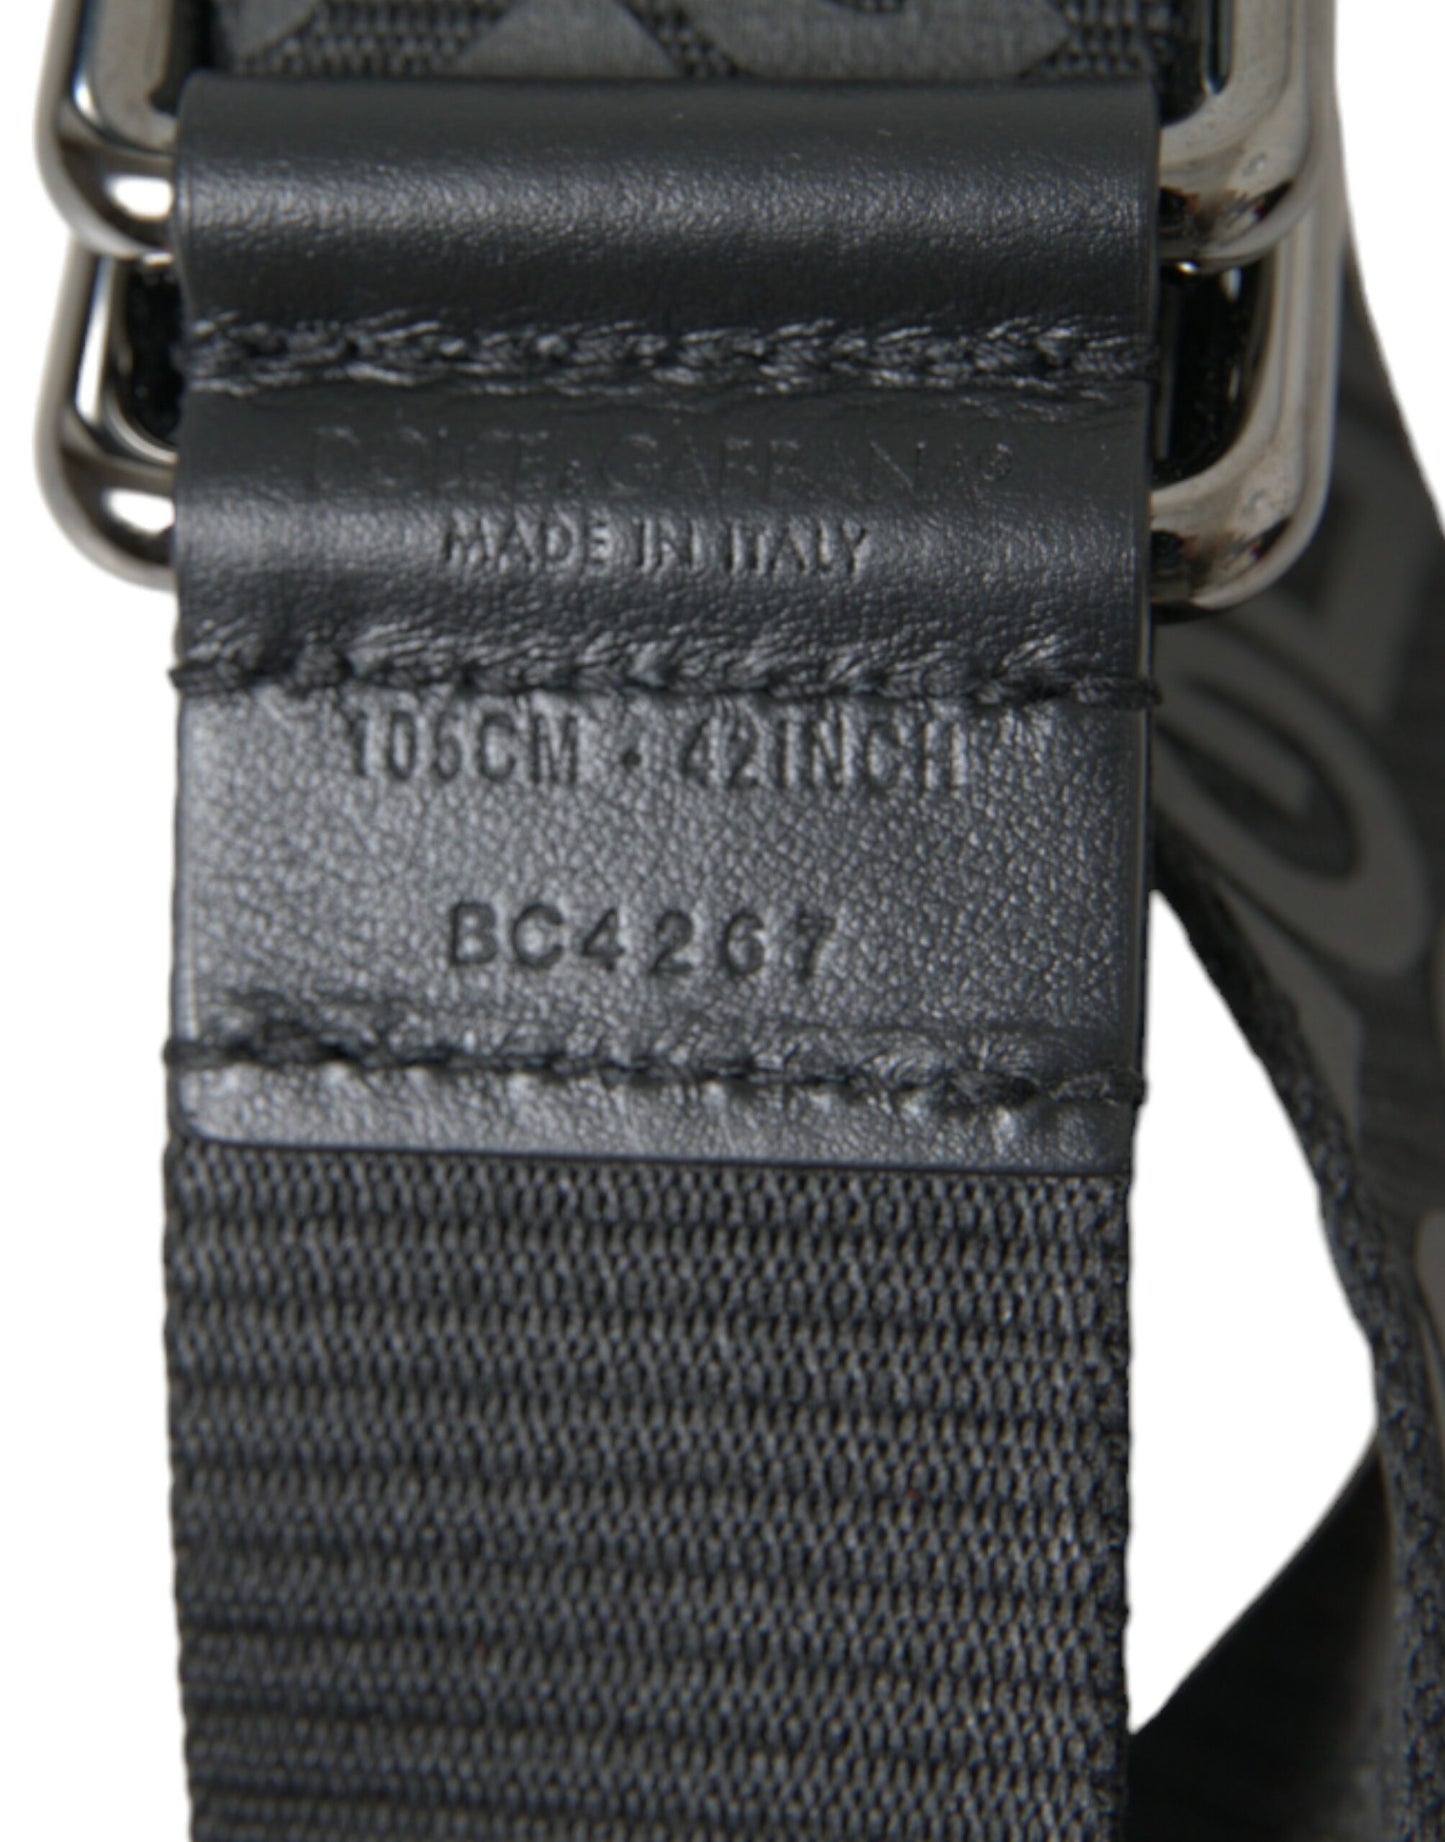 Elegant Black Leather-Blend Belt